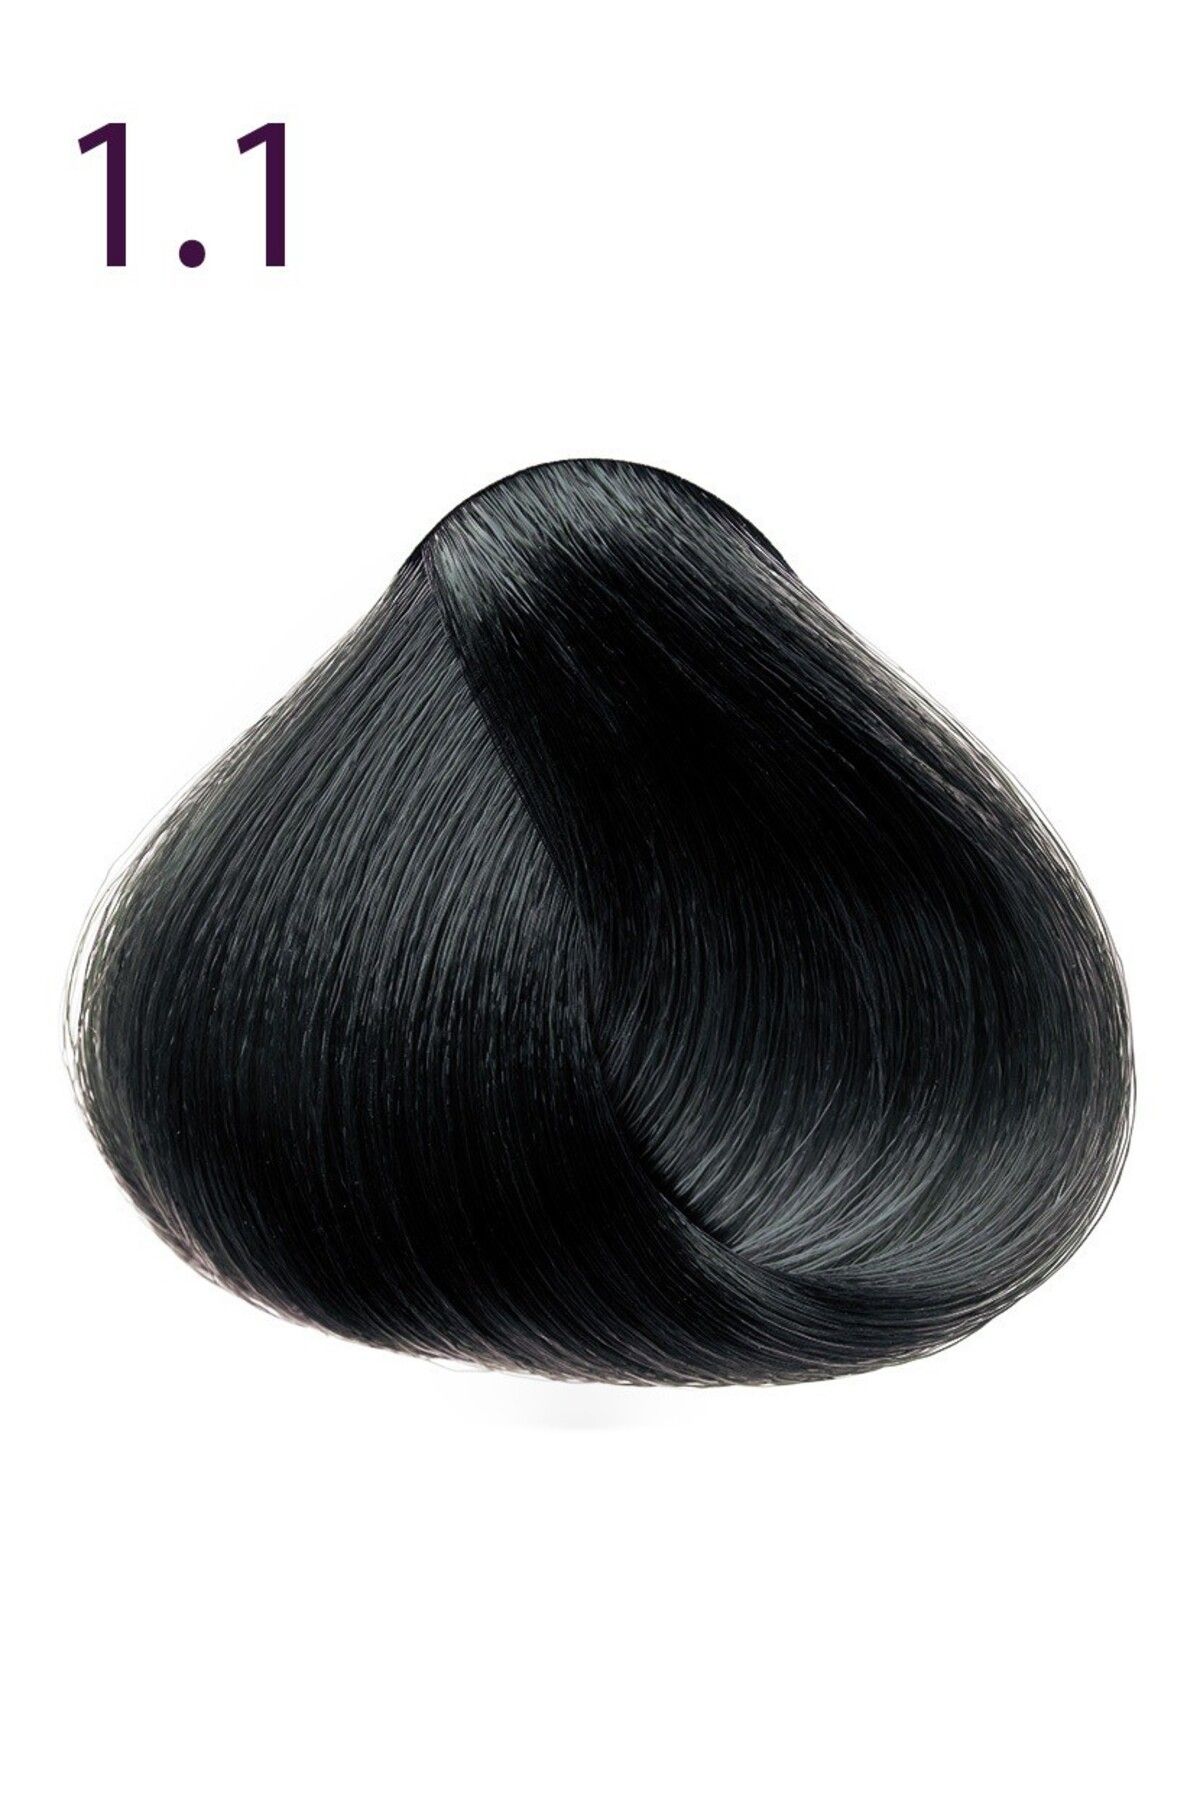 Faberlic Kalıcı krem saç boyası Expert Color serisinin maksimum rengi ton 1.1 Siyah-mavi